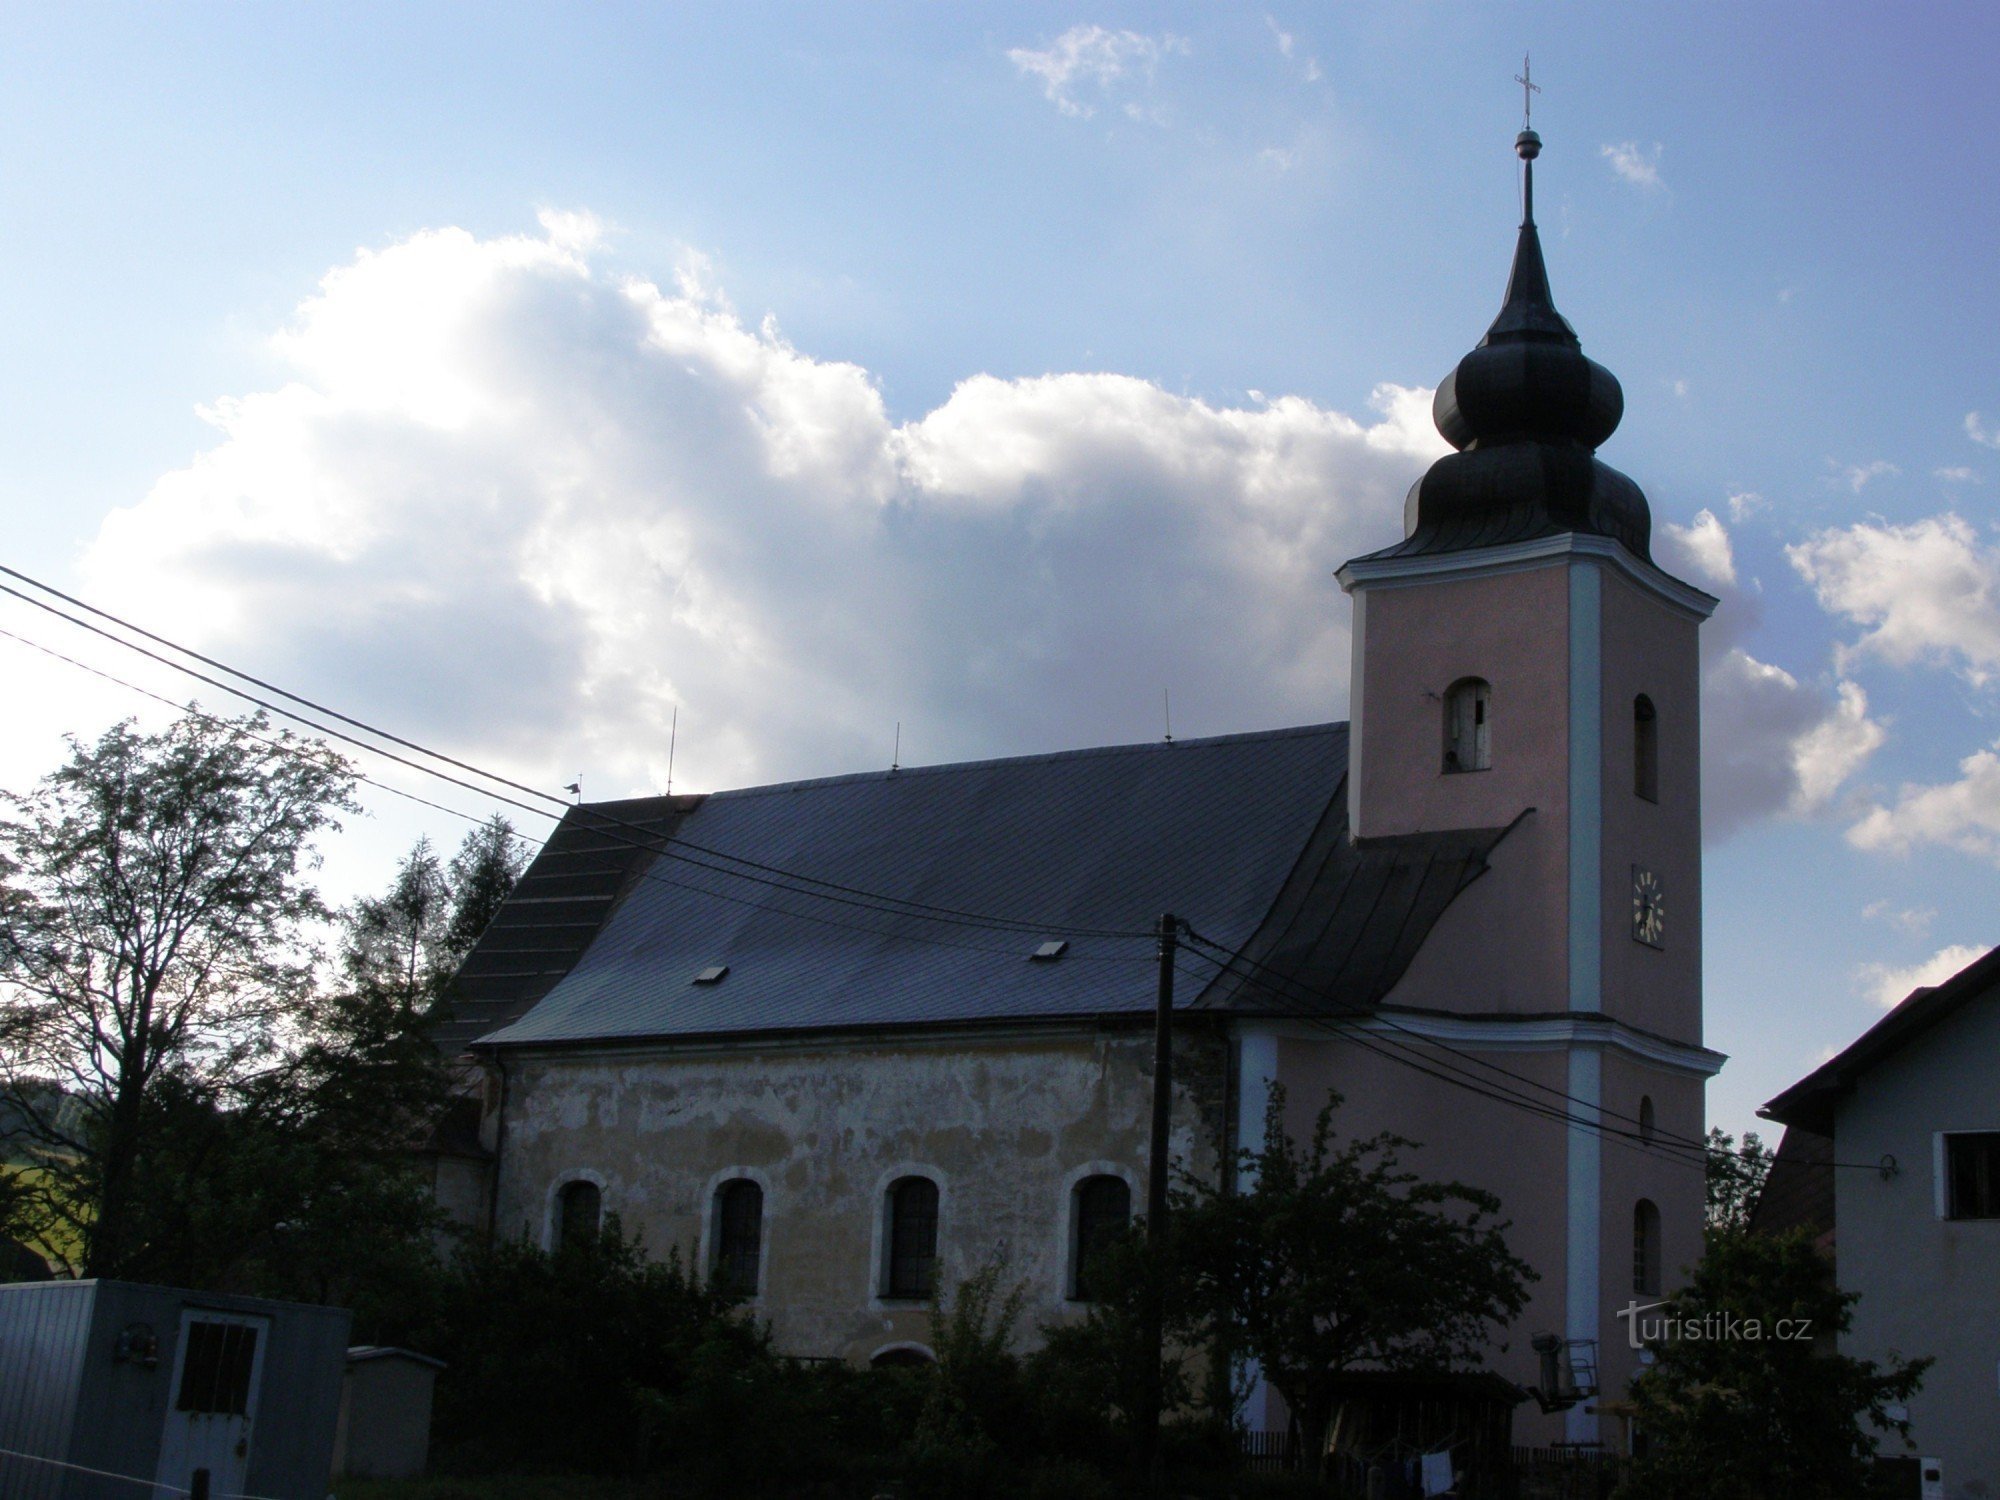 Domasov - Église de St. Jean le Baptiste